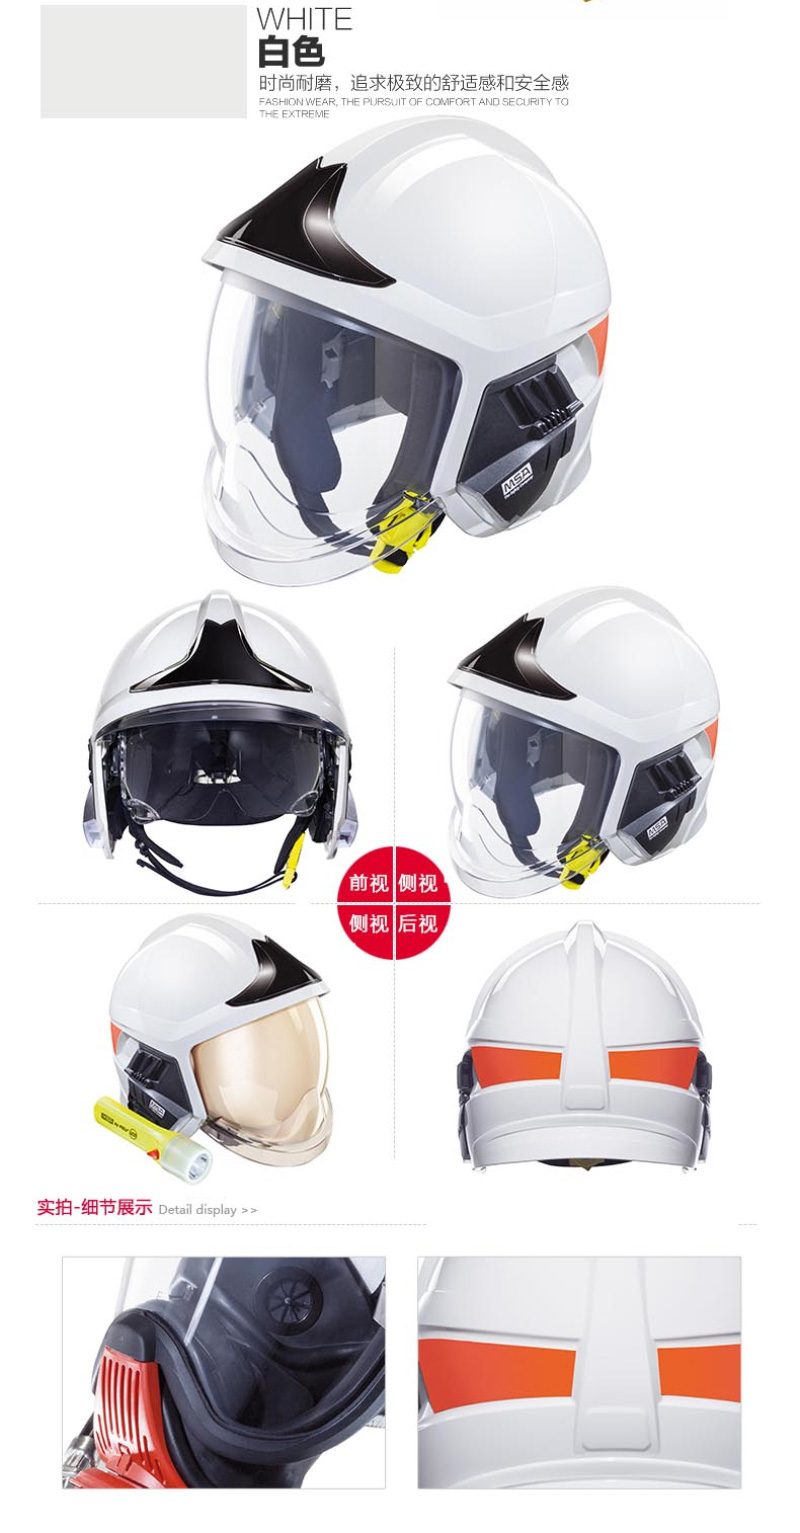 梅思安10158867 消防头盔 F1XF 中号 白色 带照明模组